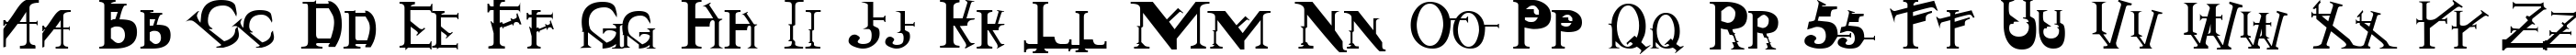 Пример написания английского алфавита шрифтом Singothic Regular